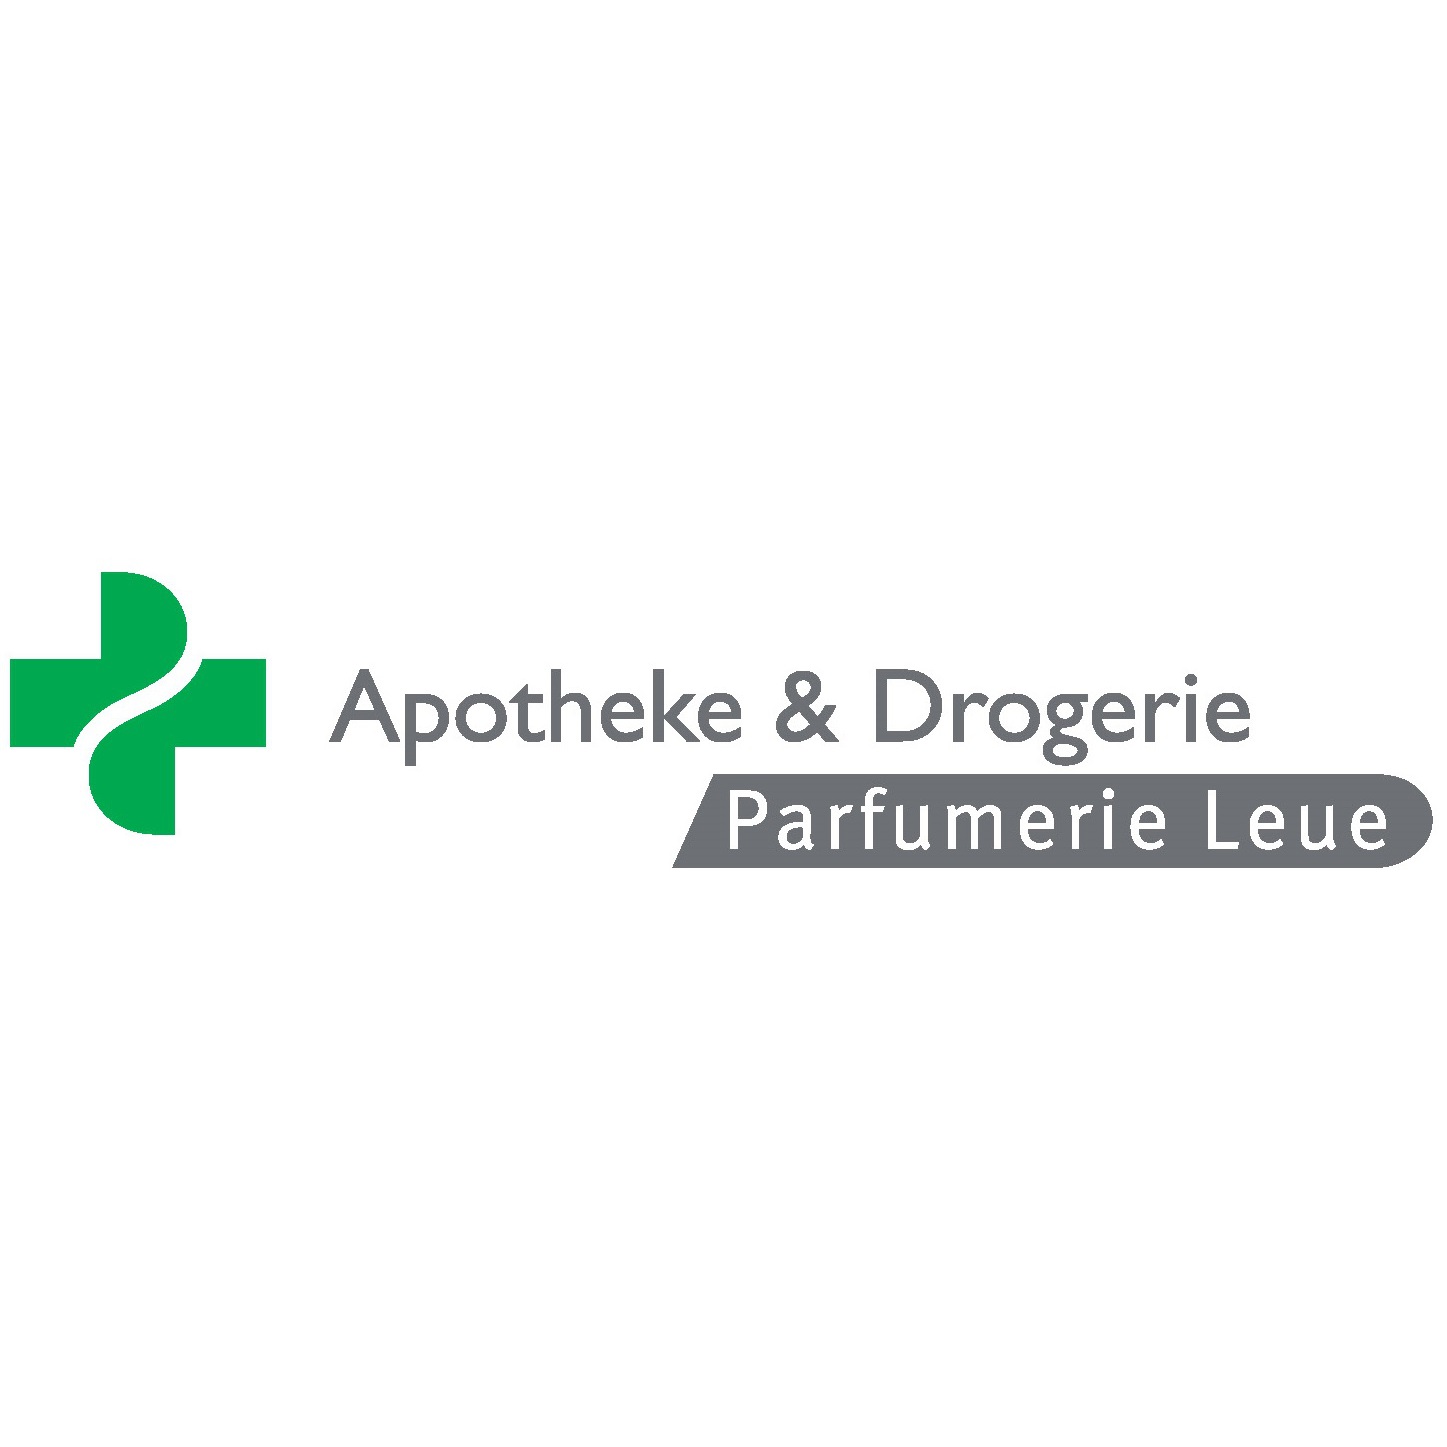 Apotheke Drogerie Parfumerie Leue Logo